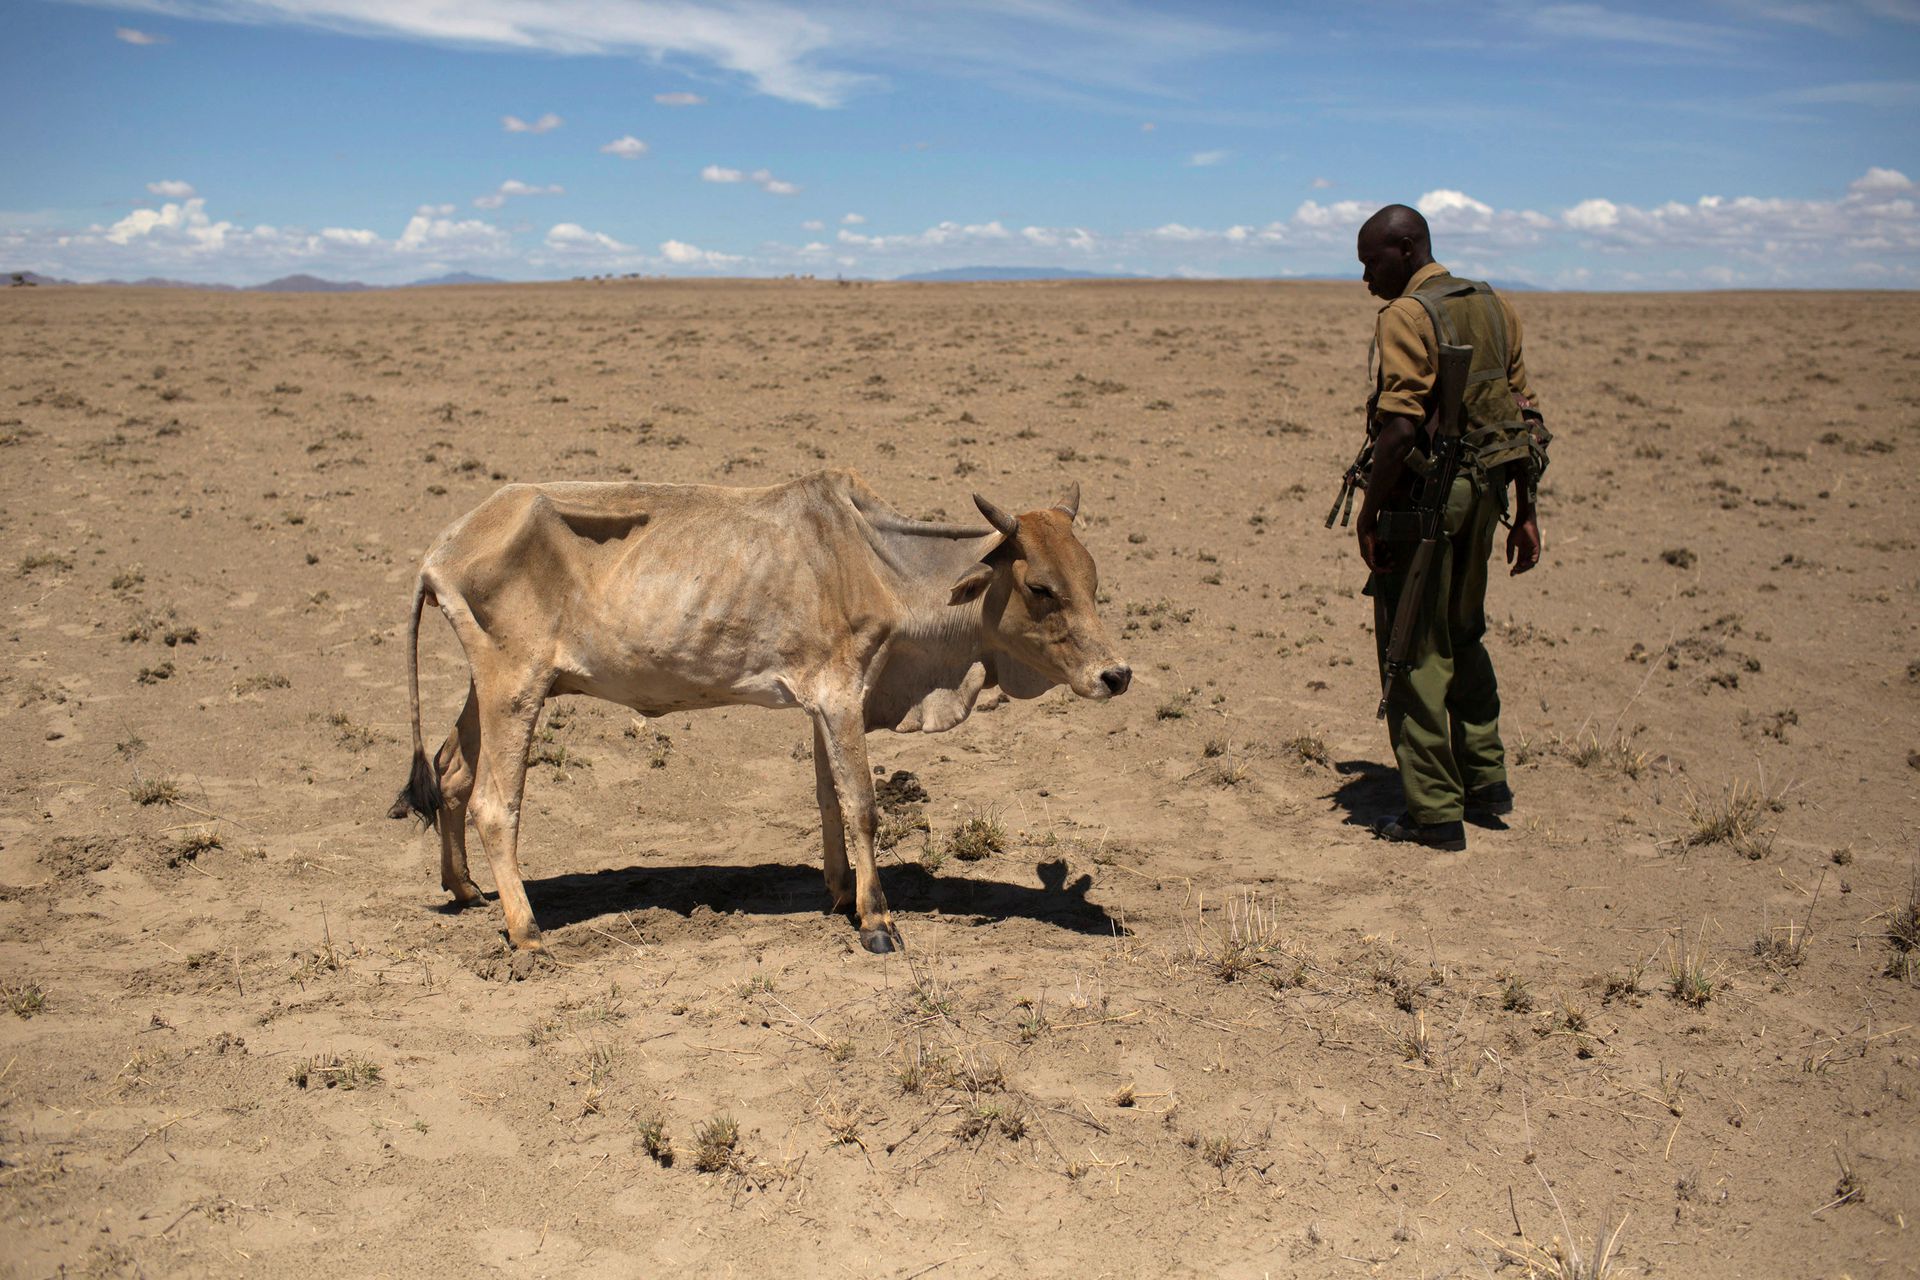 Природа голода. Восточная Африка засуха. 2011 Год: засуха и голод в Восточной Африке. Сахель земледелие.